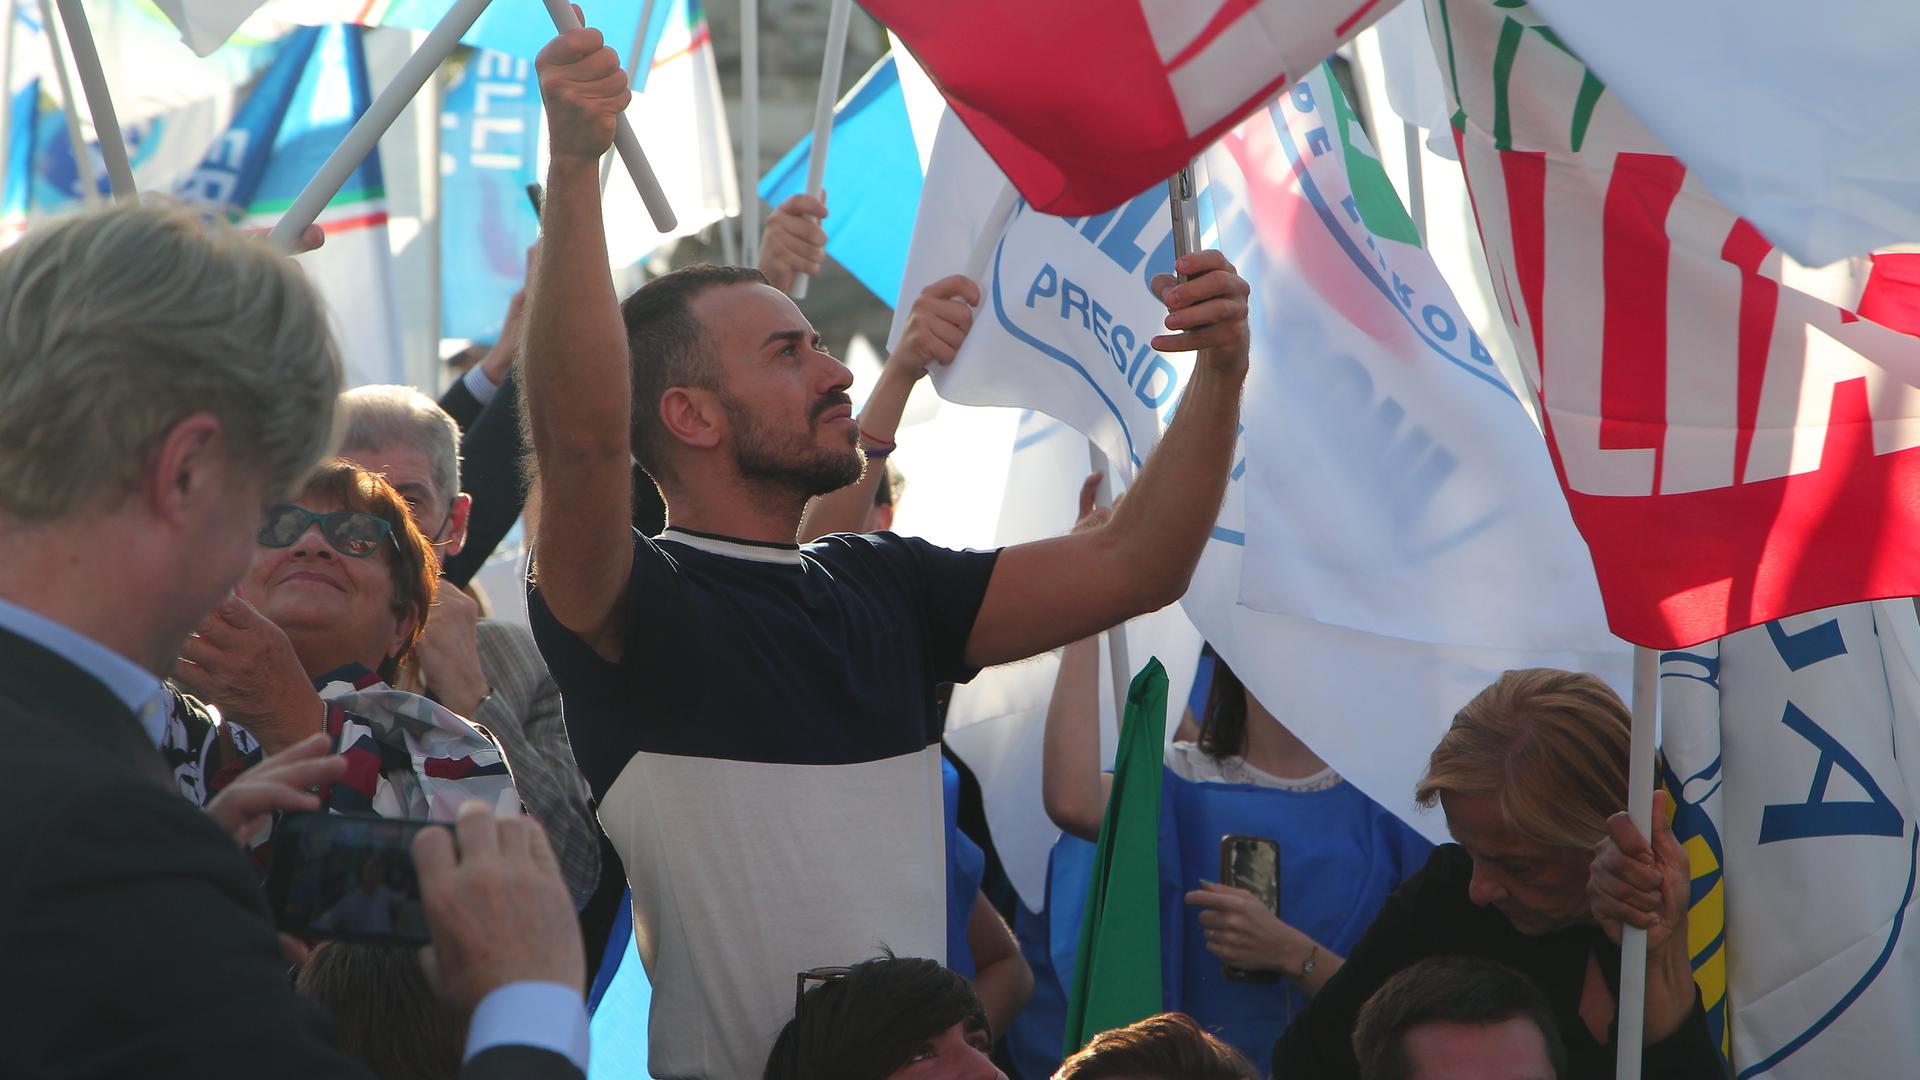 Wahlkampfveranstaltung der erwarteten Mitte-Rechts-Koalition auf dem Piazza del Popolo in Rom, Italien. 